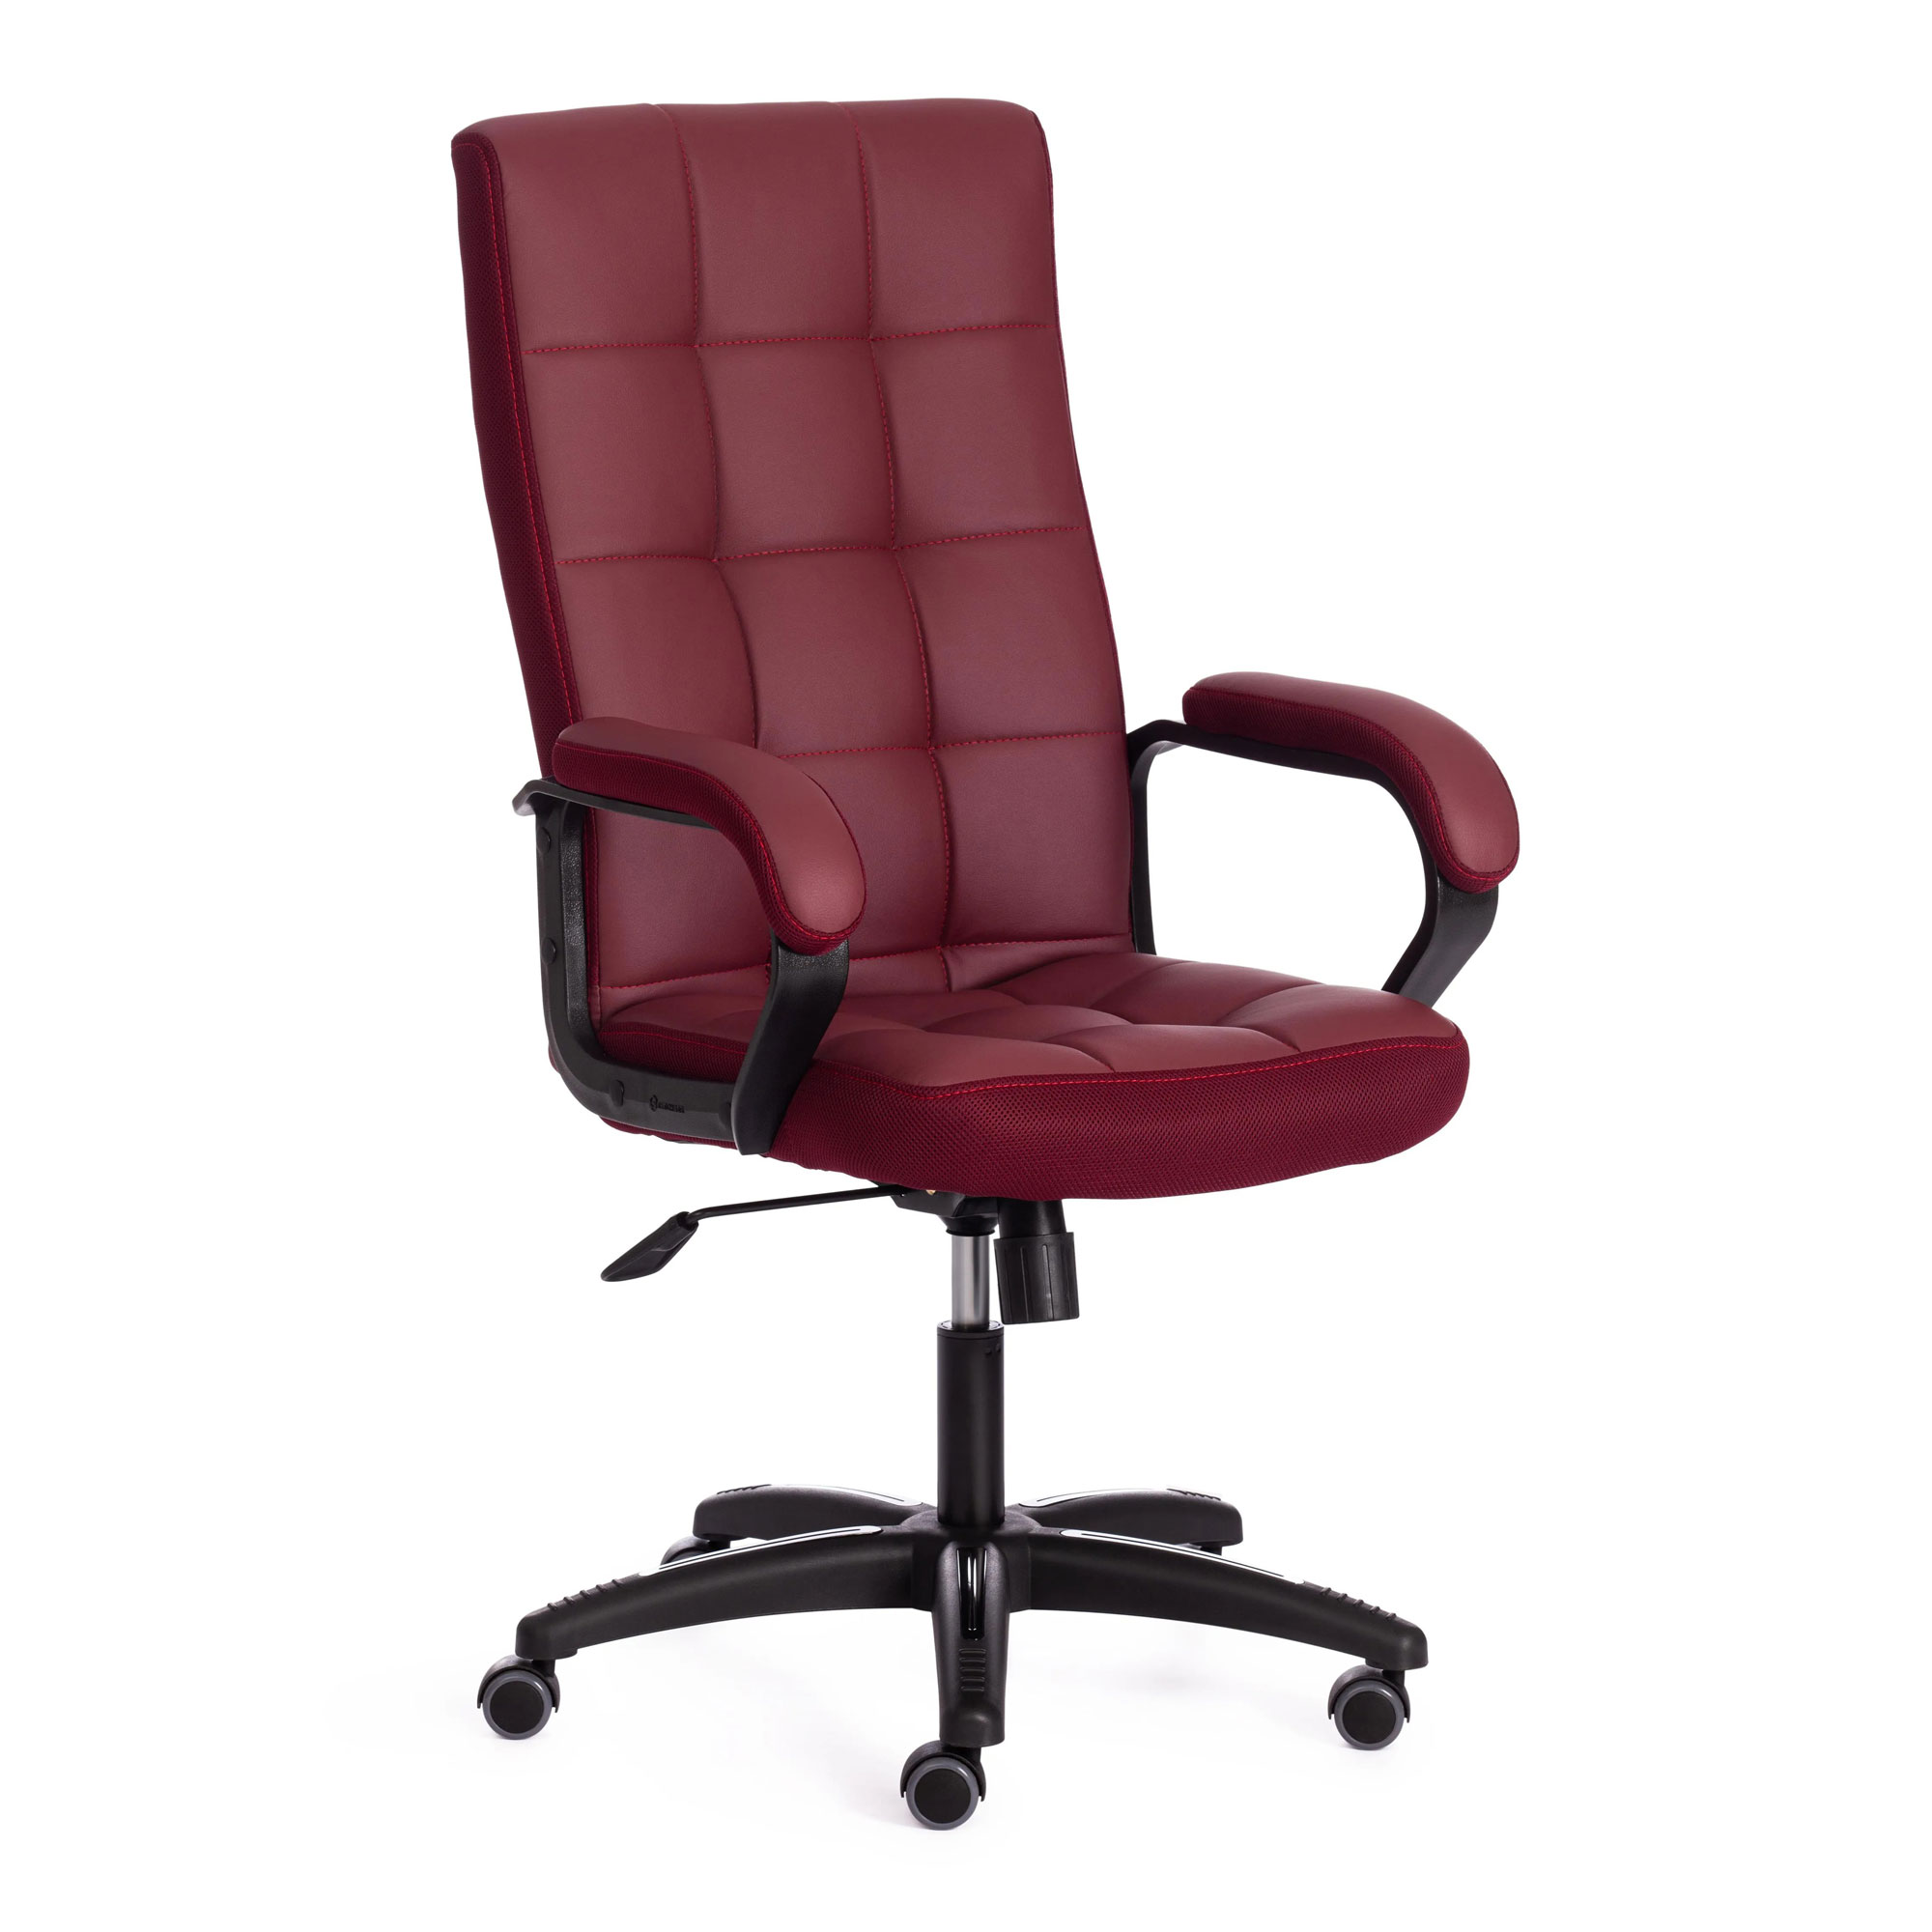 Кресло компьютерное TC искусственная кожа бордовое 61х47х126 см кресло компьютерное tc neo искусственная кожа коричневое с бежевым 64х49х122 см